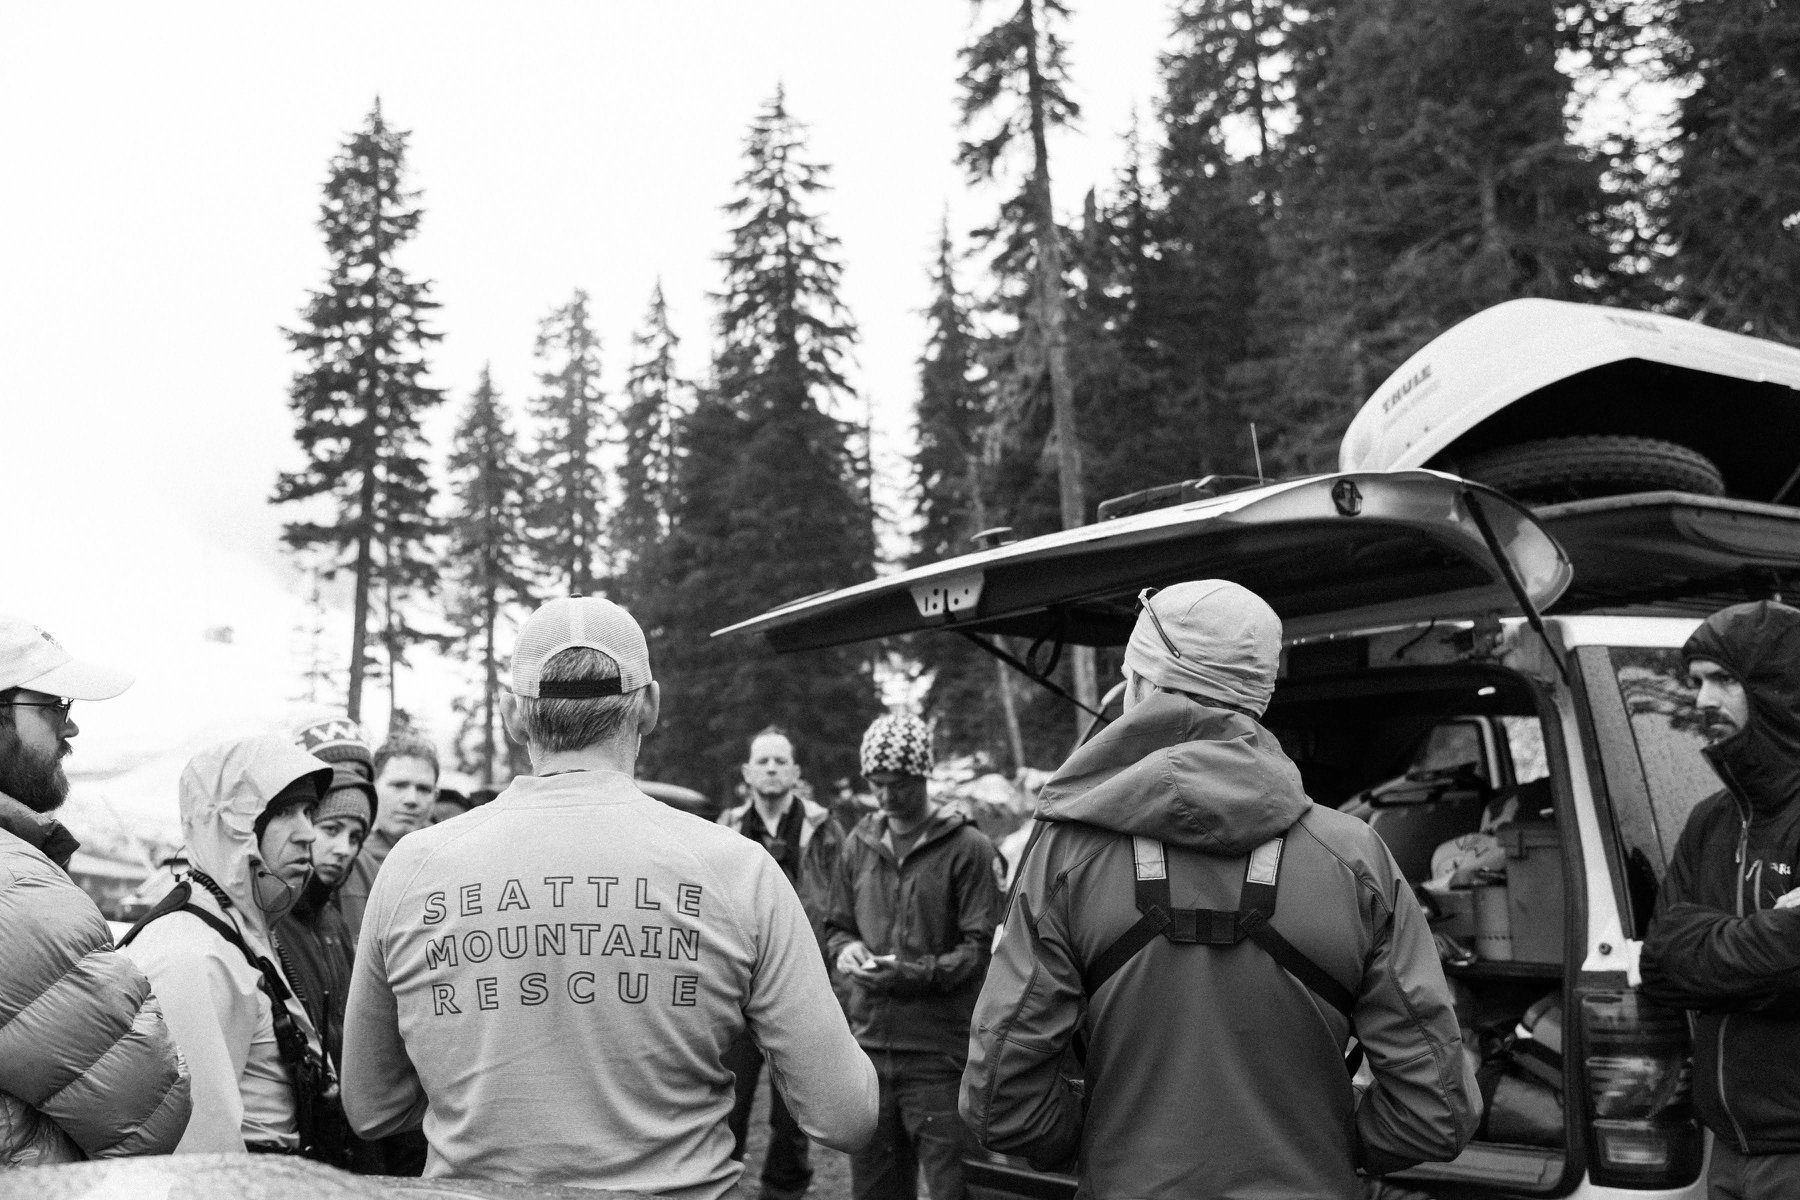 Seattle Mountain Rescue on a mountain rescue operation